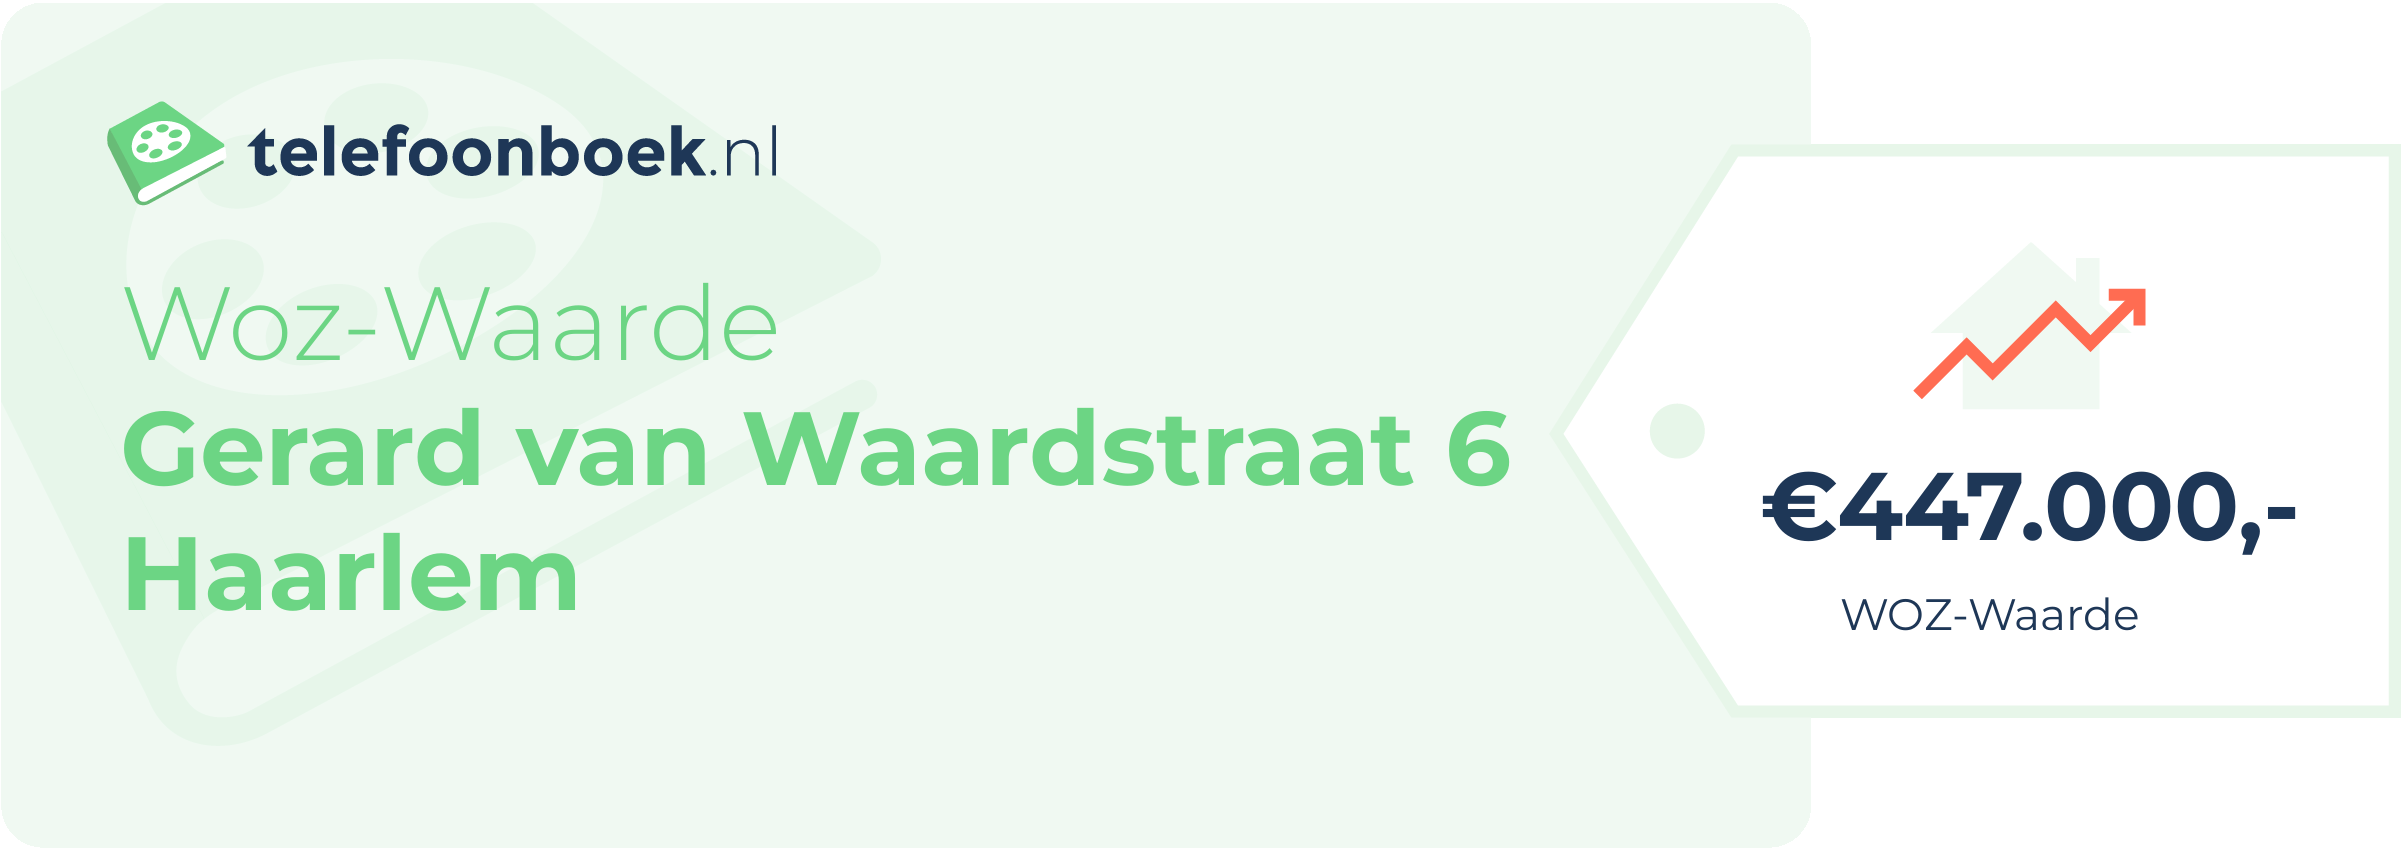 WOZ-waarde Gerard Van Waardstraat 6 Haarlem